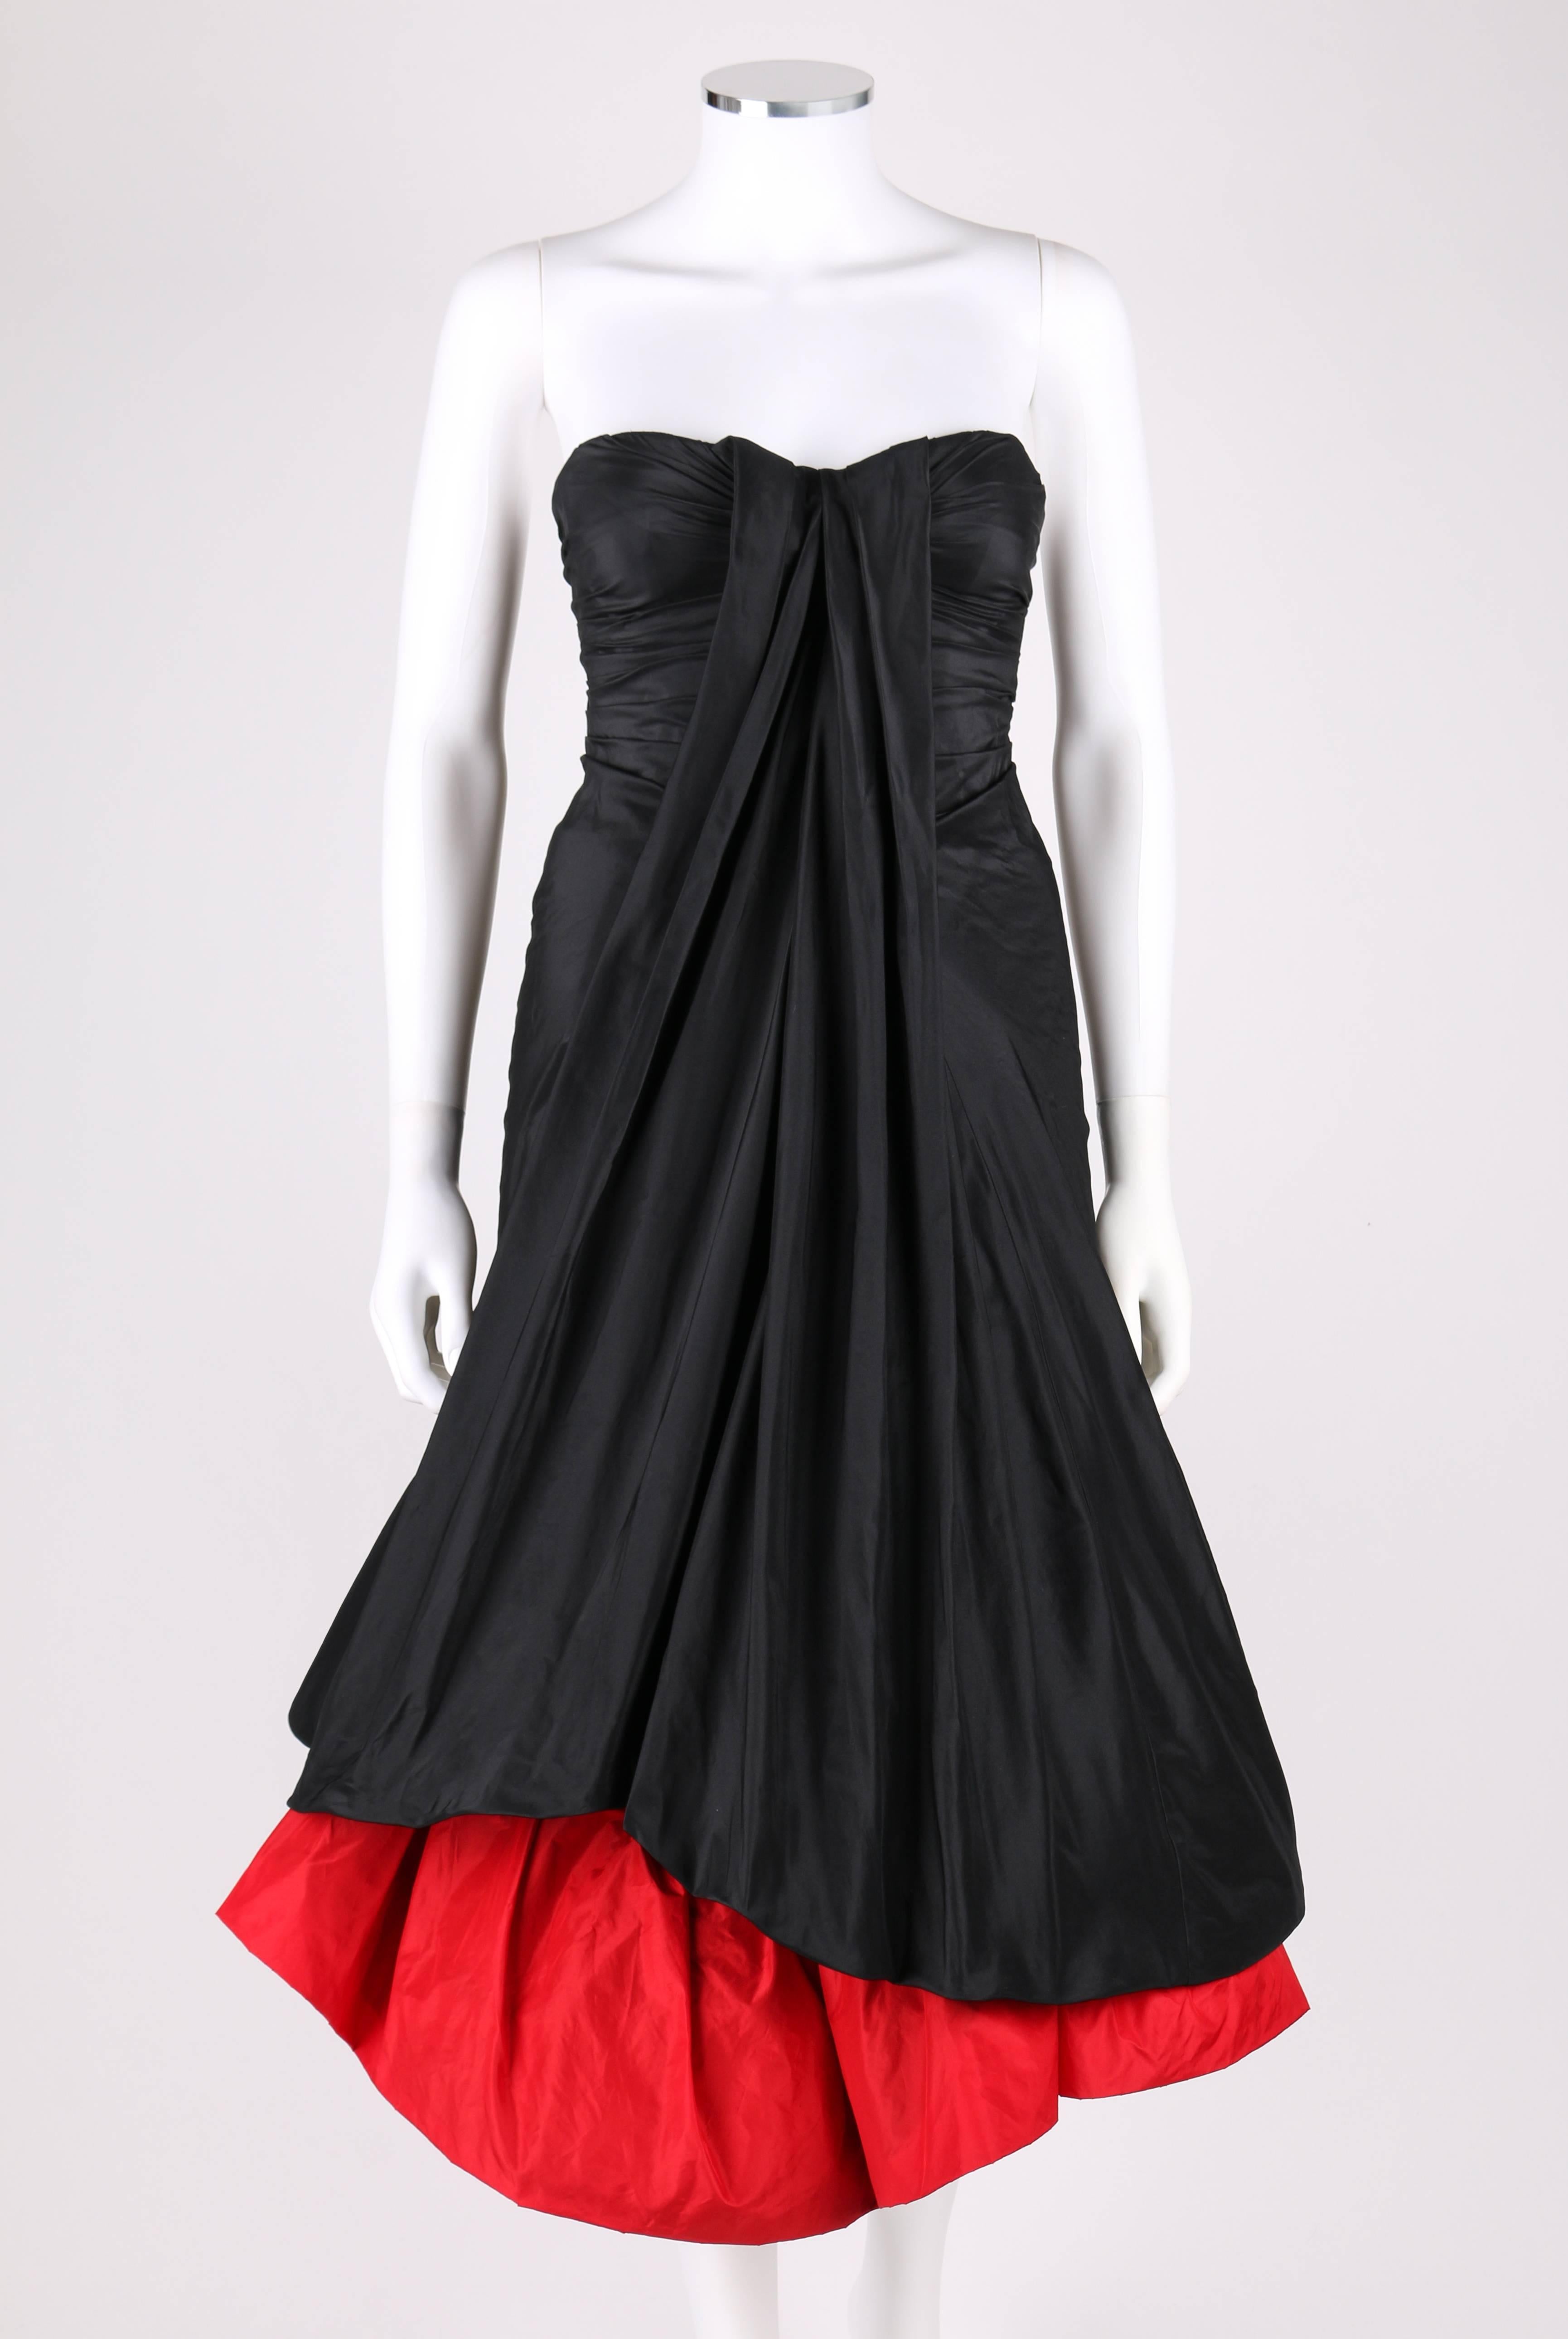 Alexander McQueen Autumn/Winter 2007 black and red silk taffeta strapless evening dress from 